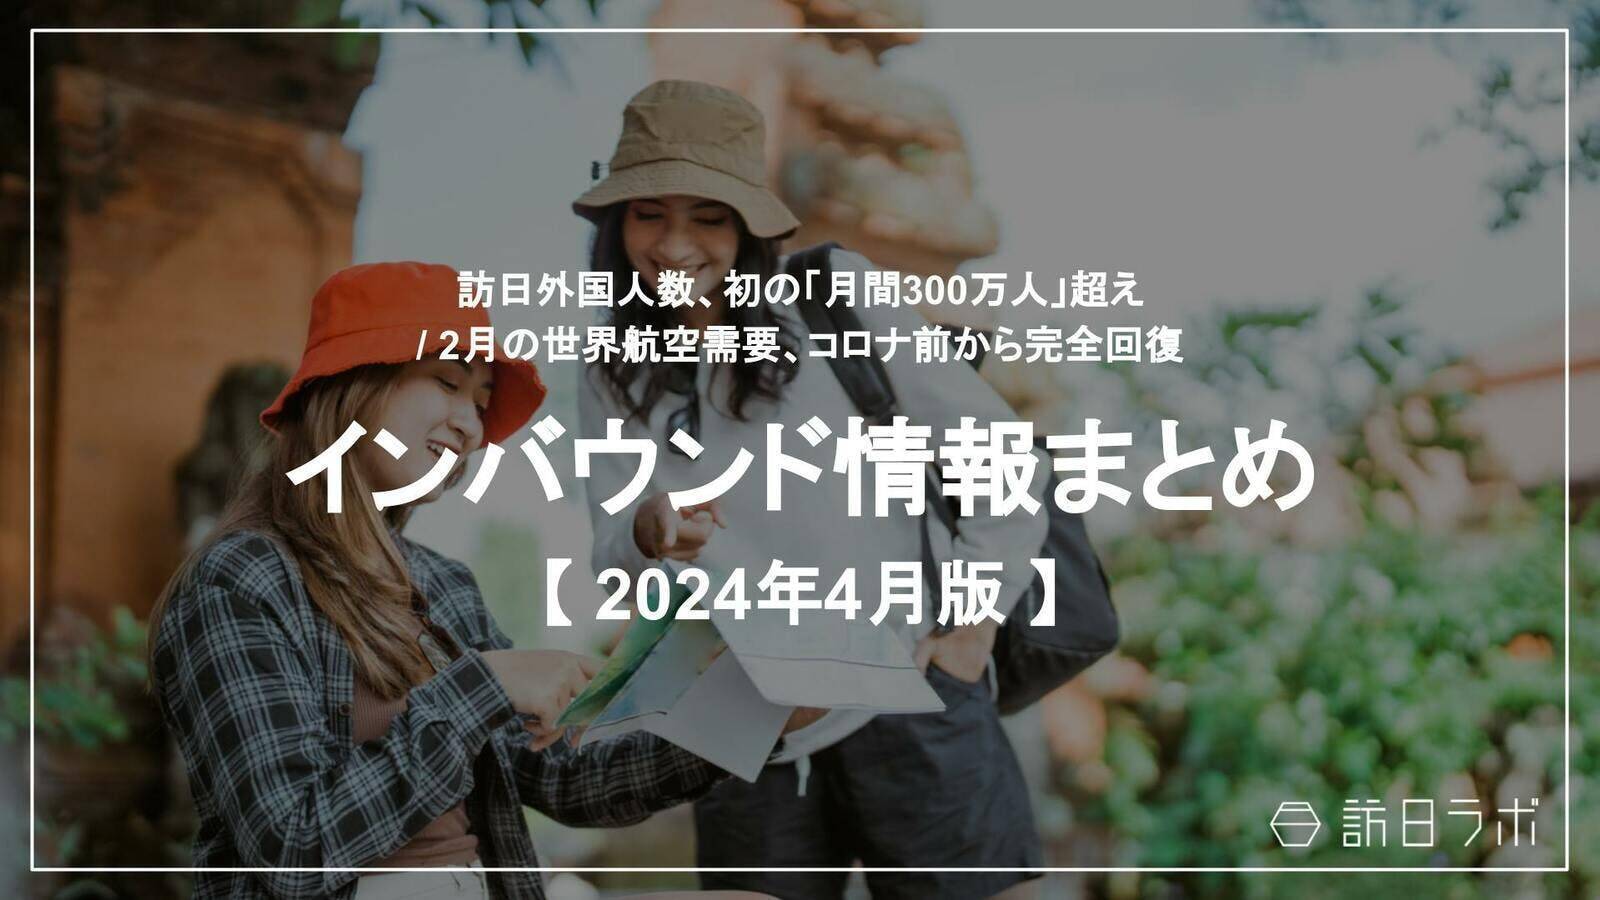 アメリカと日本の関係は？2024年は「日米観光交流年」、改めて経済や政治、文化面のつながりをわかりやすく解説！